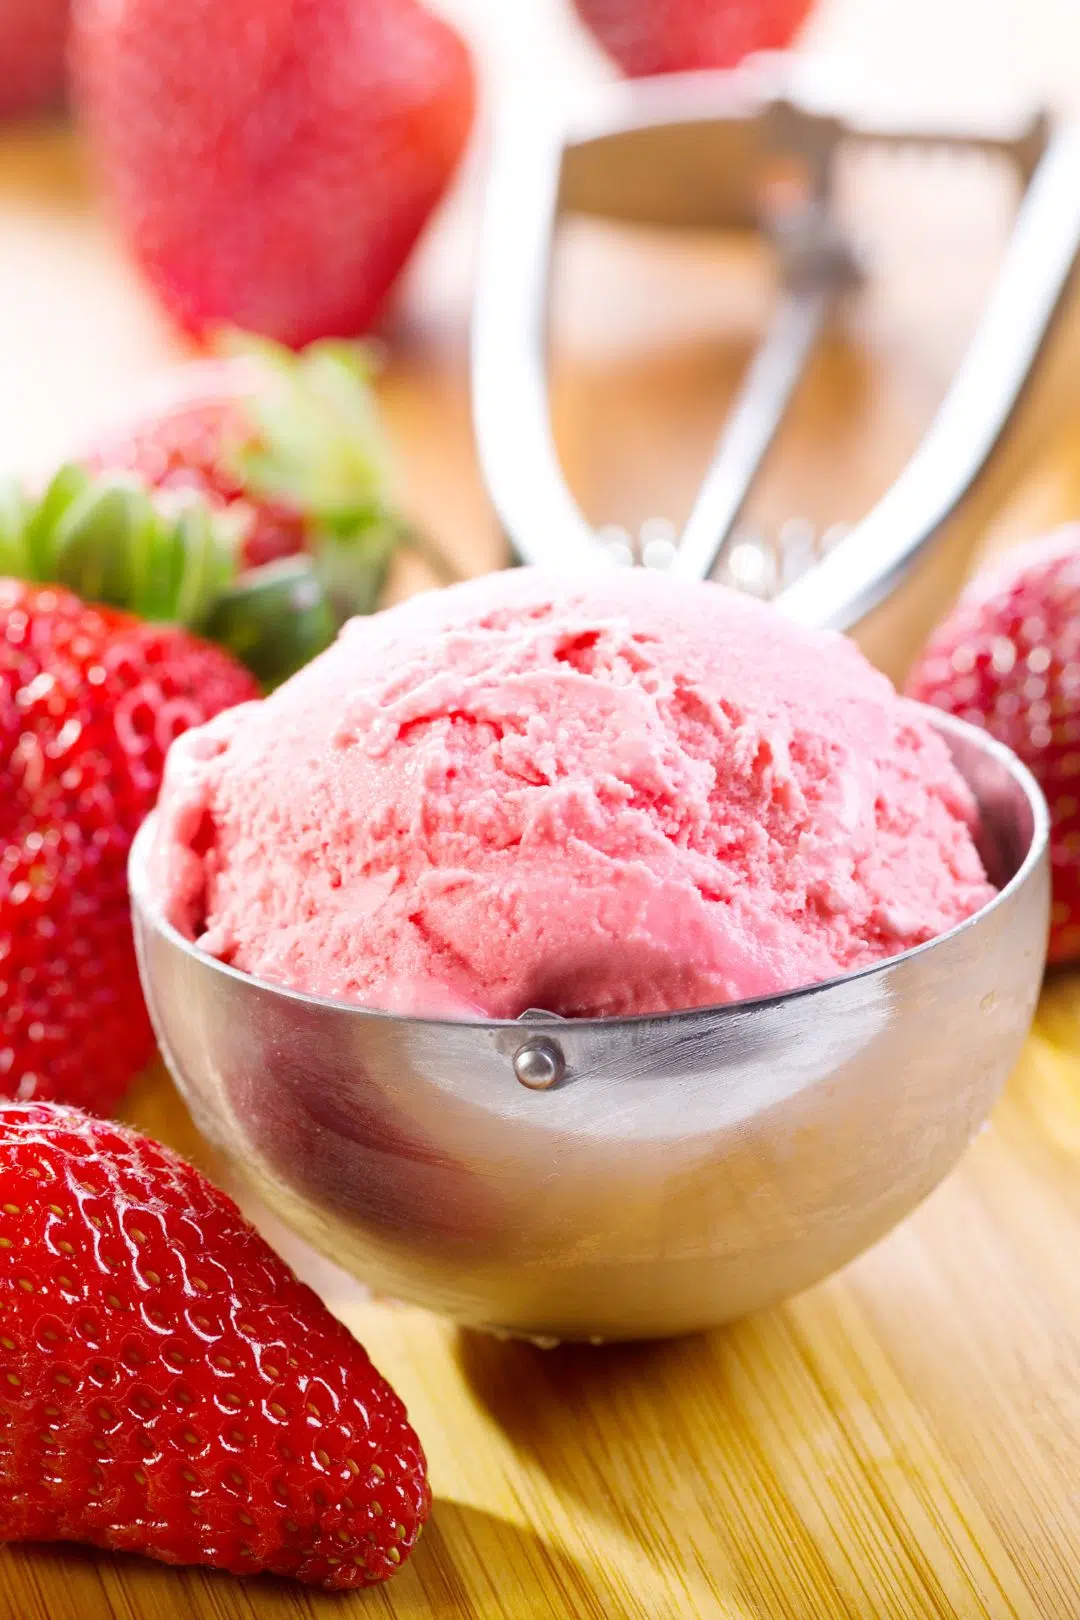 keto strawberry ice cream in a scoop